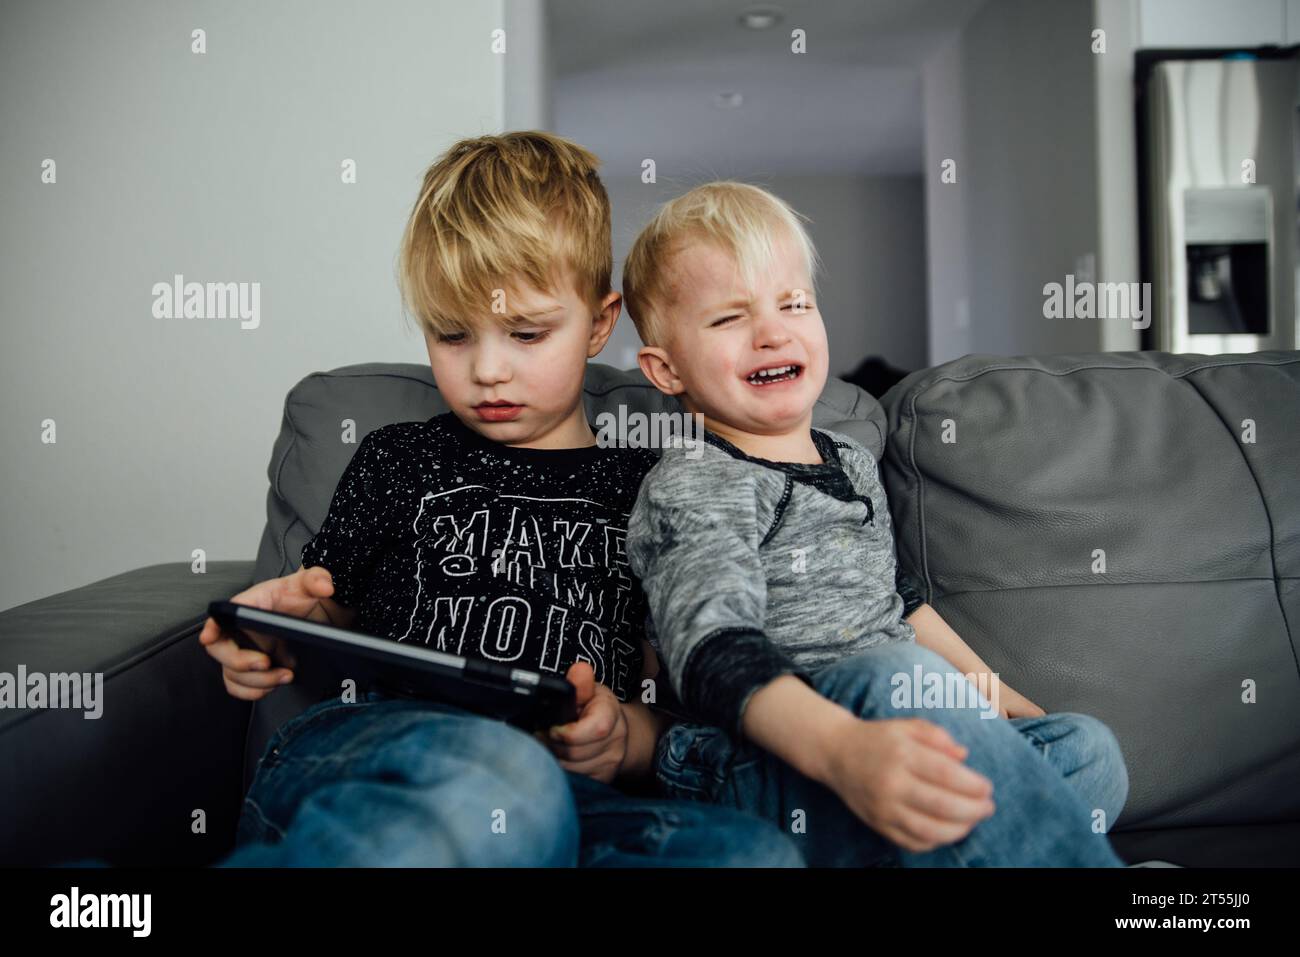 Zwei Jungs sitzen auf einer Couch, während einer ein ipad hält und der andere Stockfoto